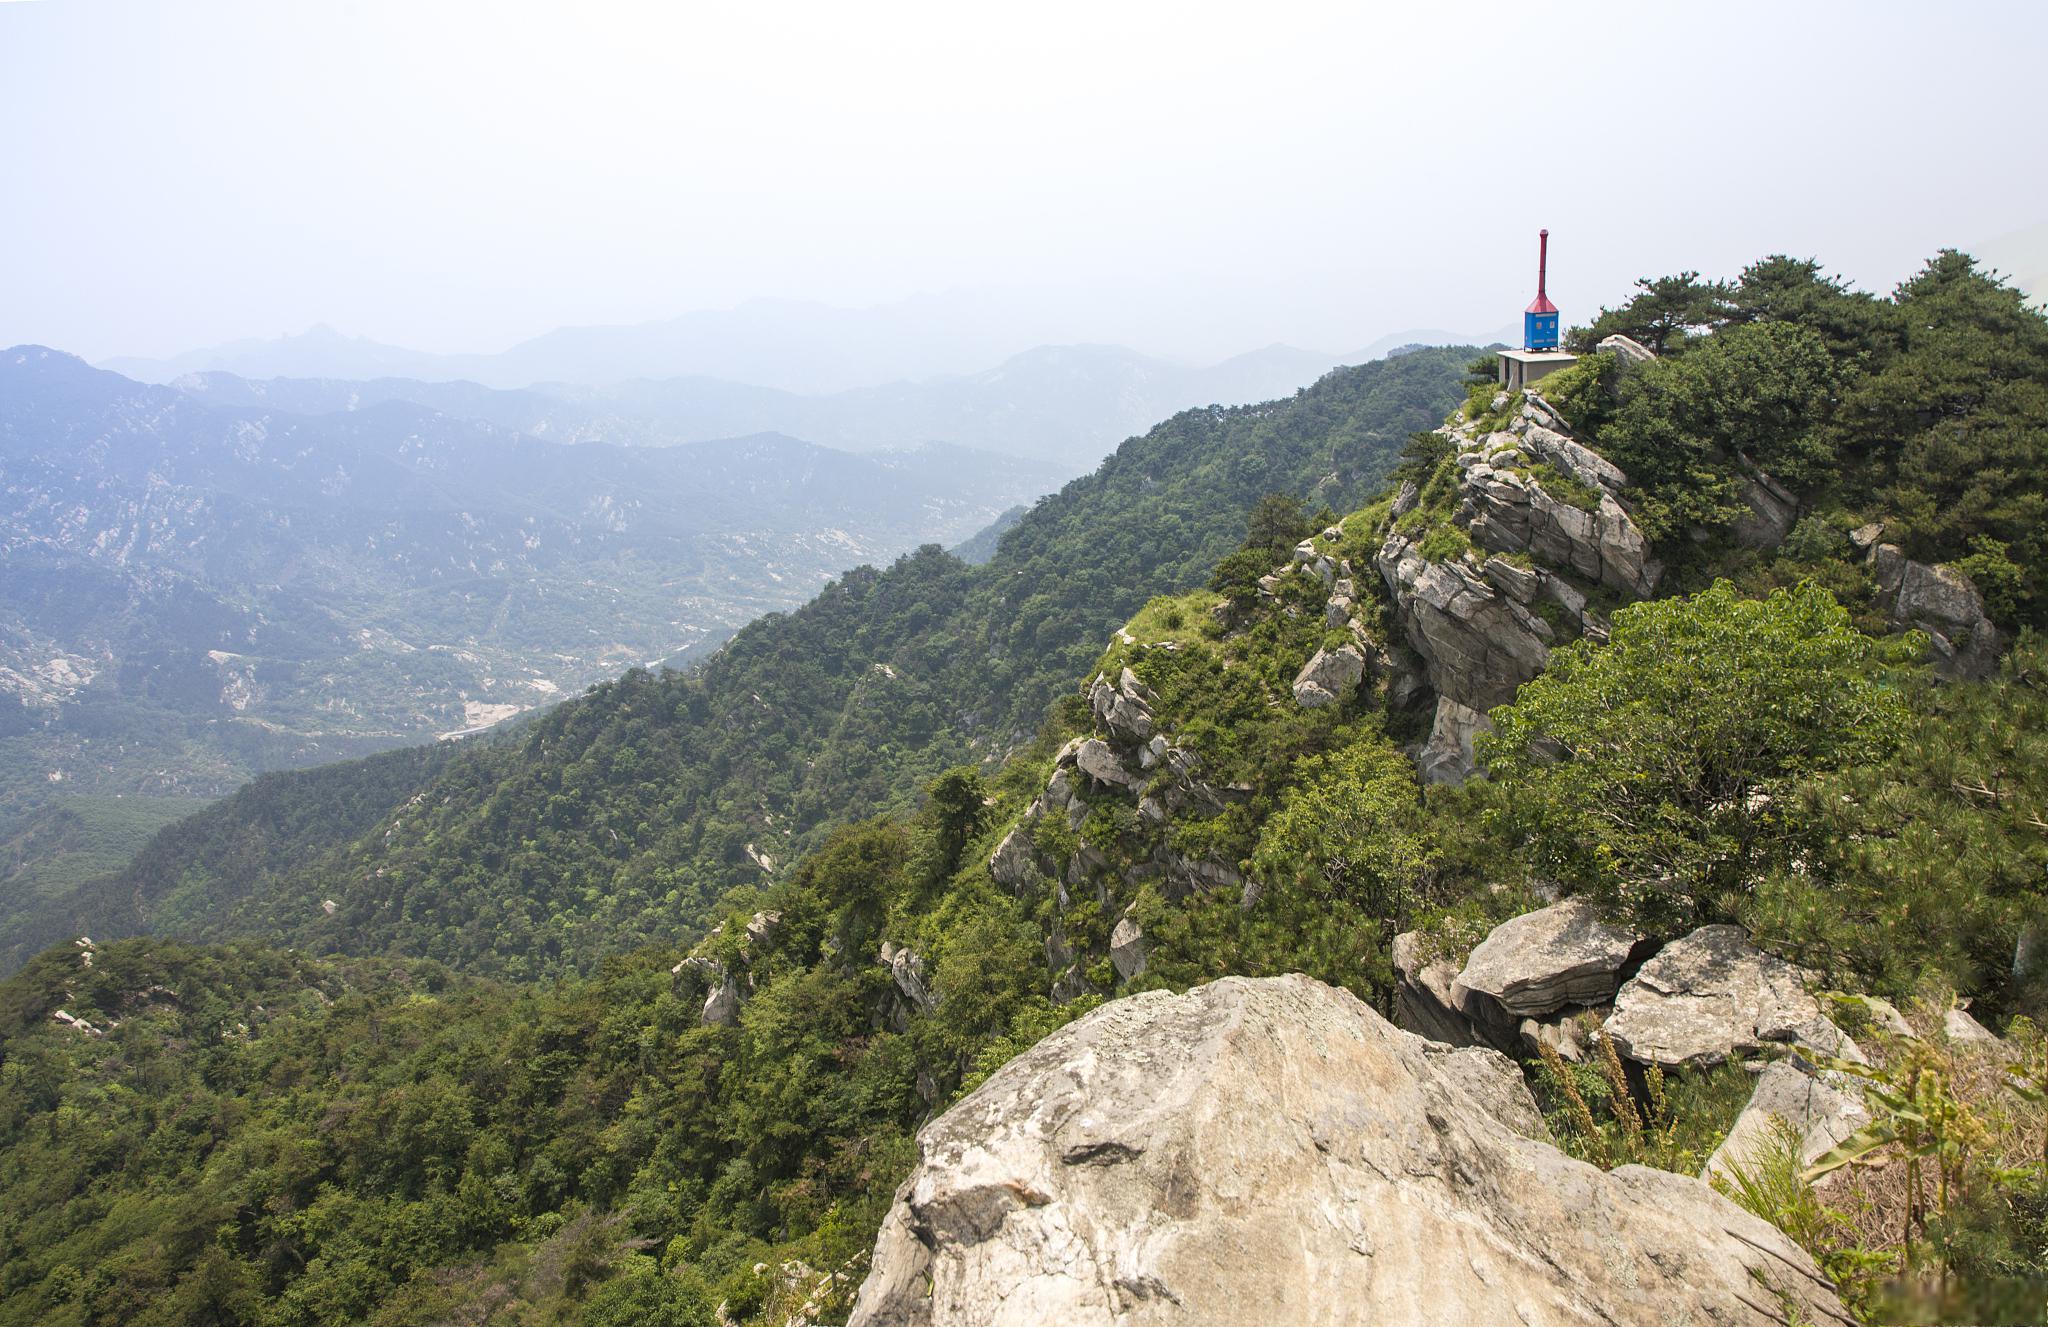 天津八仙山国家级自然保护区:探寻自然之美 天津八仙山国家级自然保护